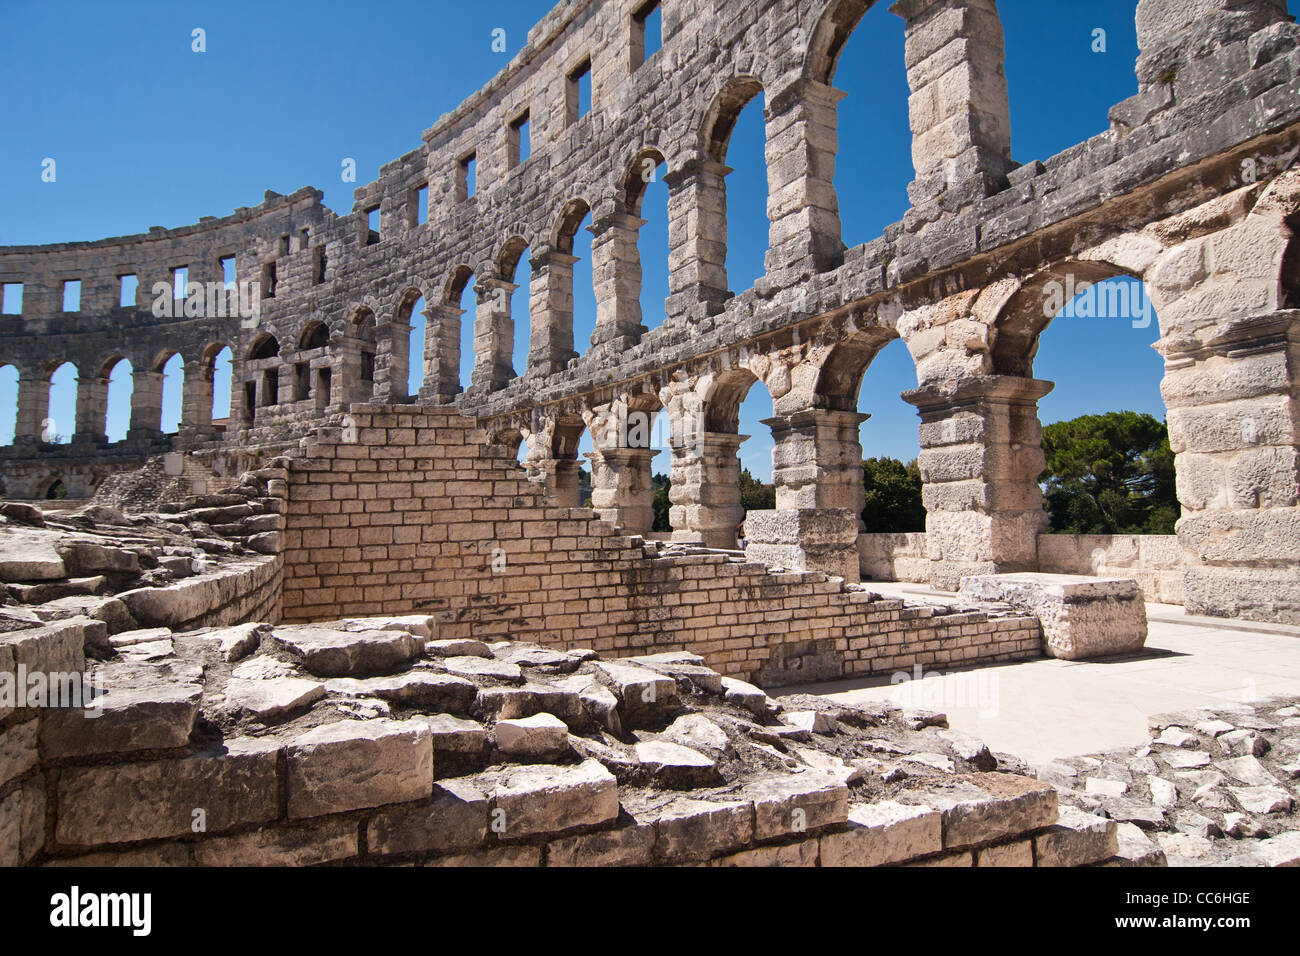 L'ancien amphithéâtre romain de Pula - Croatie Banque D'Images